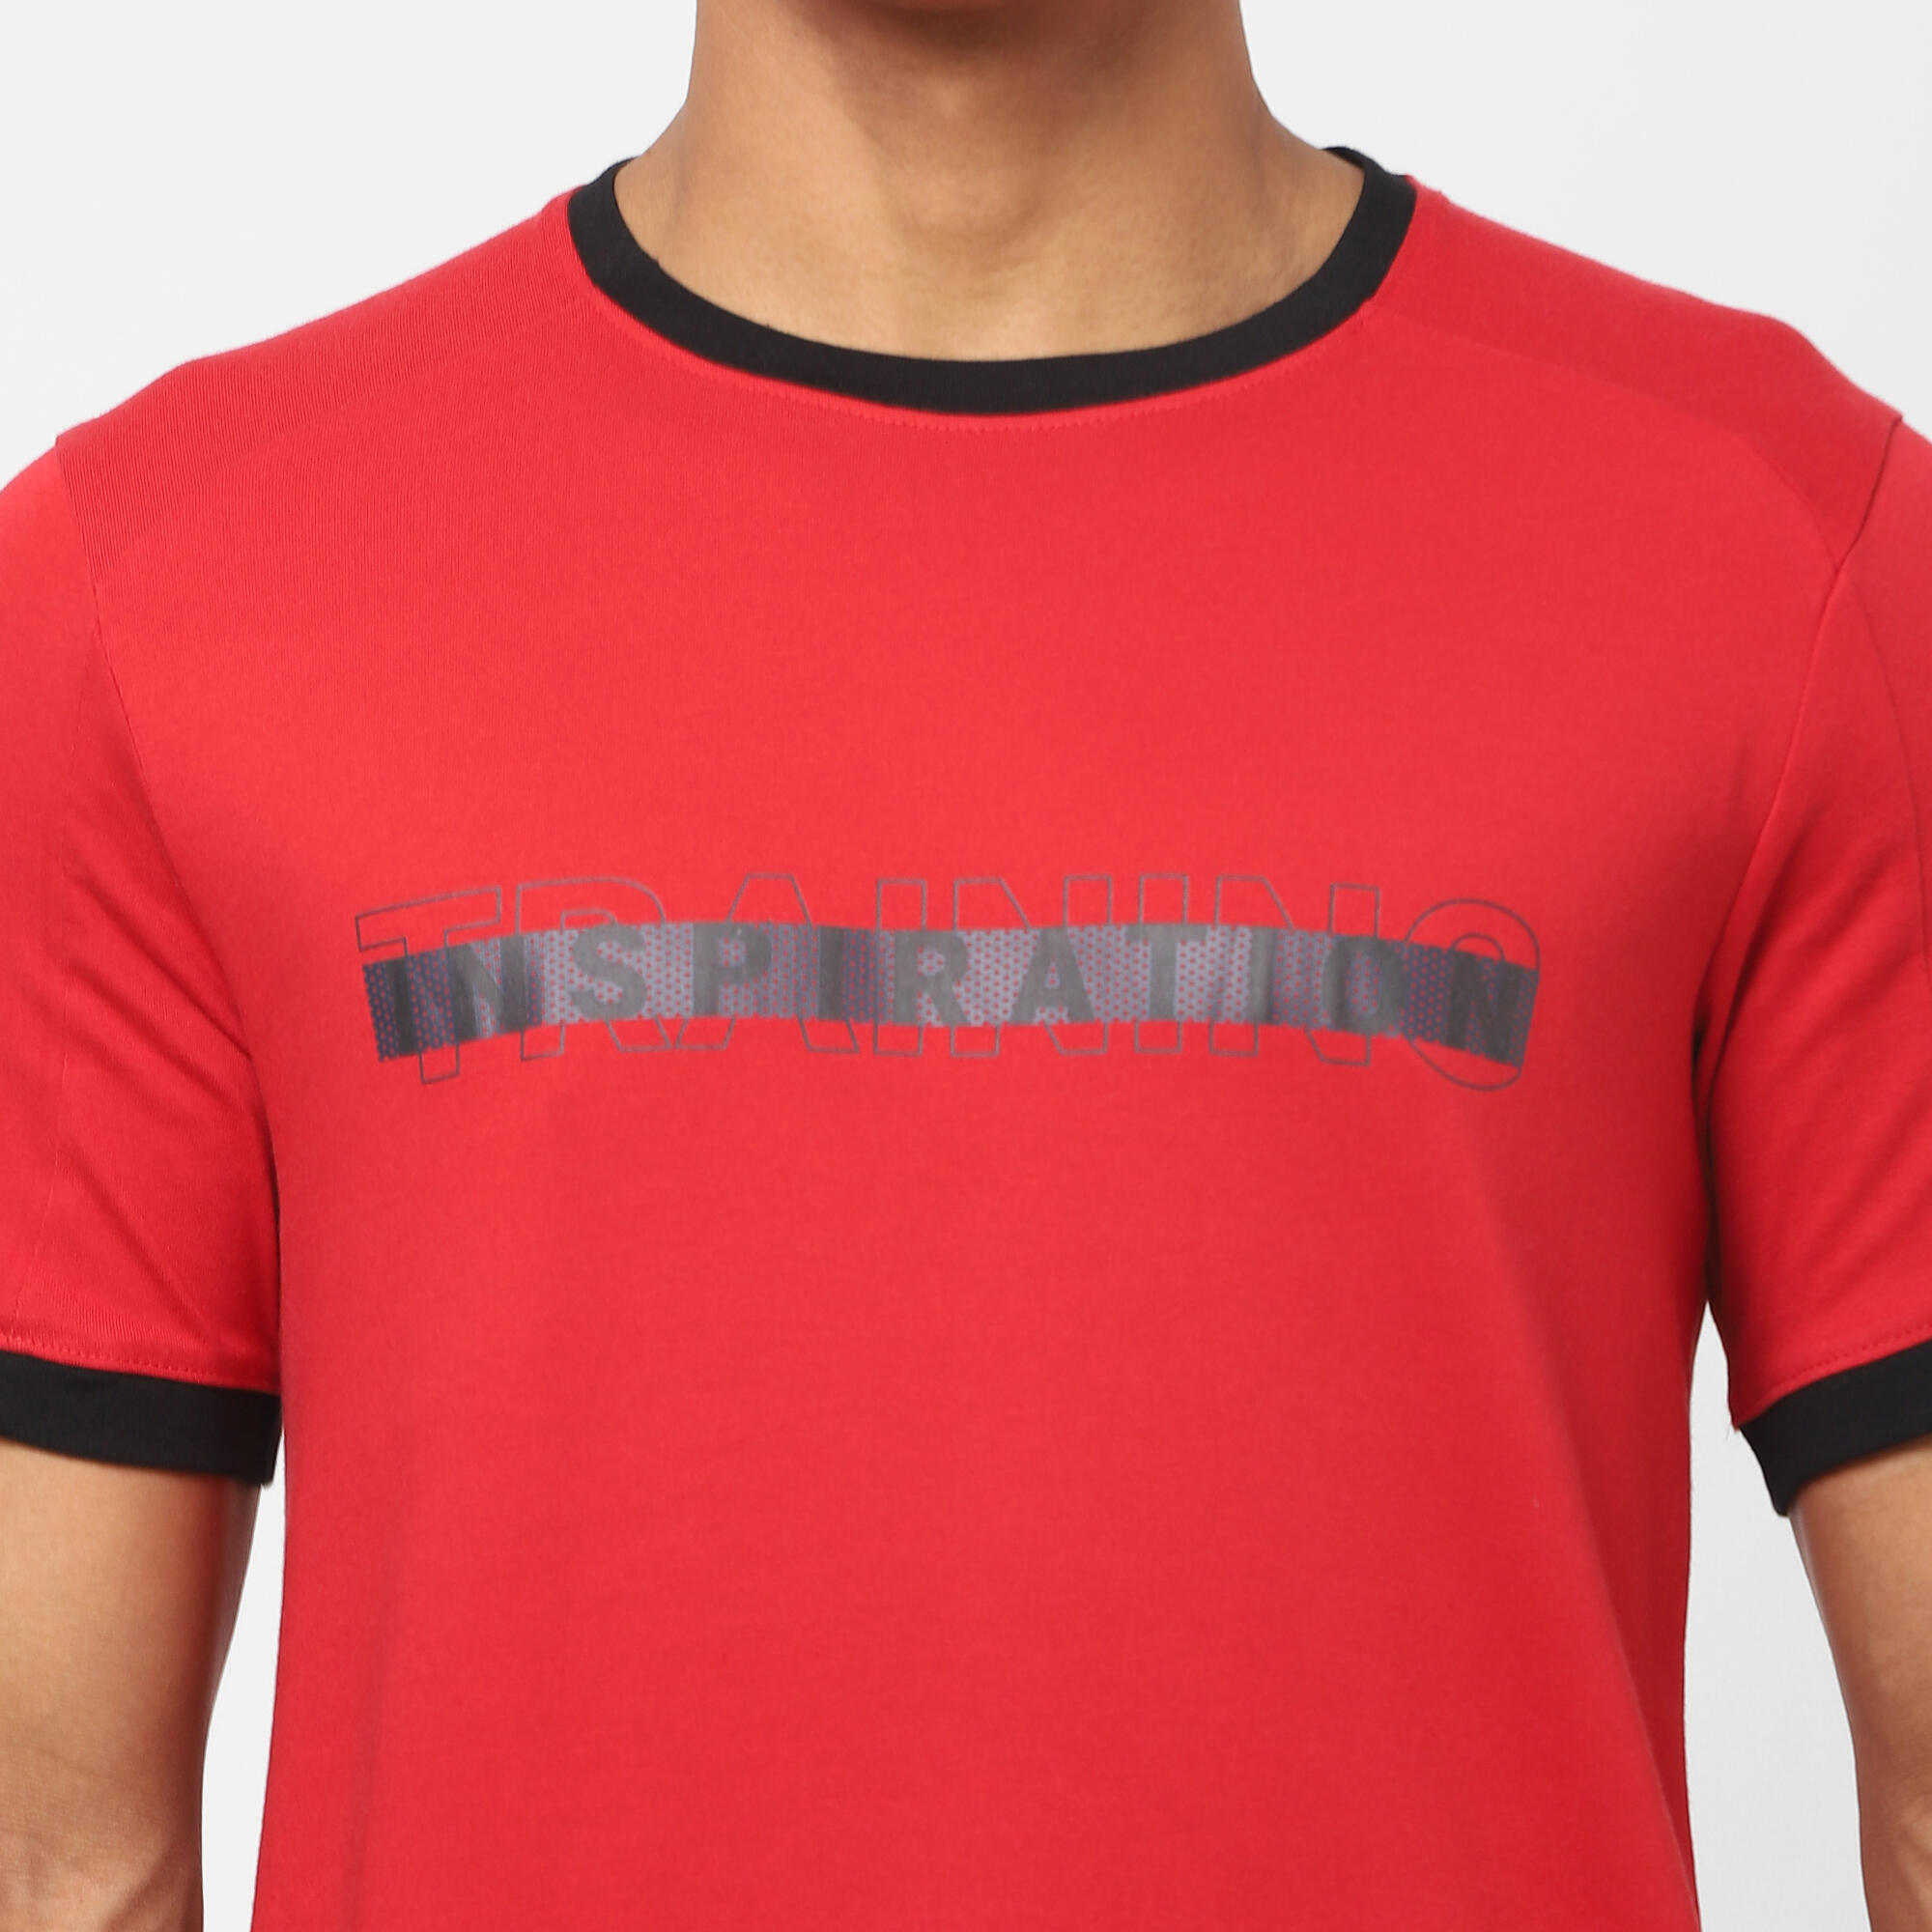 sconto 73% MODA UOMO Camicie & T-shirt Sportivo Decathlon T-shirt Grigio M 